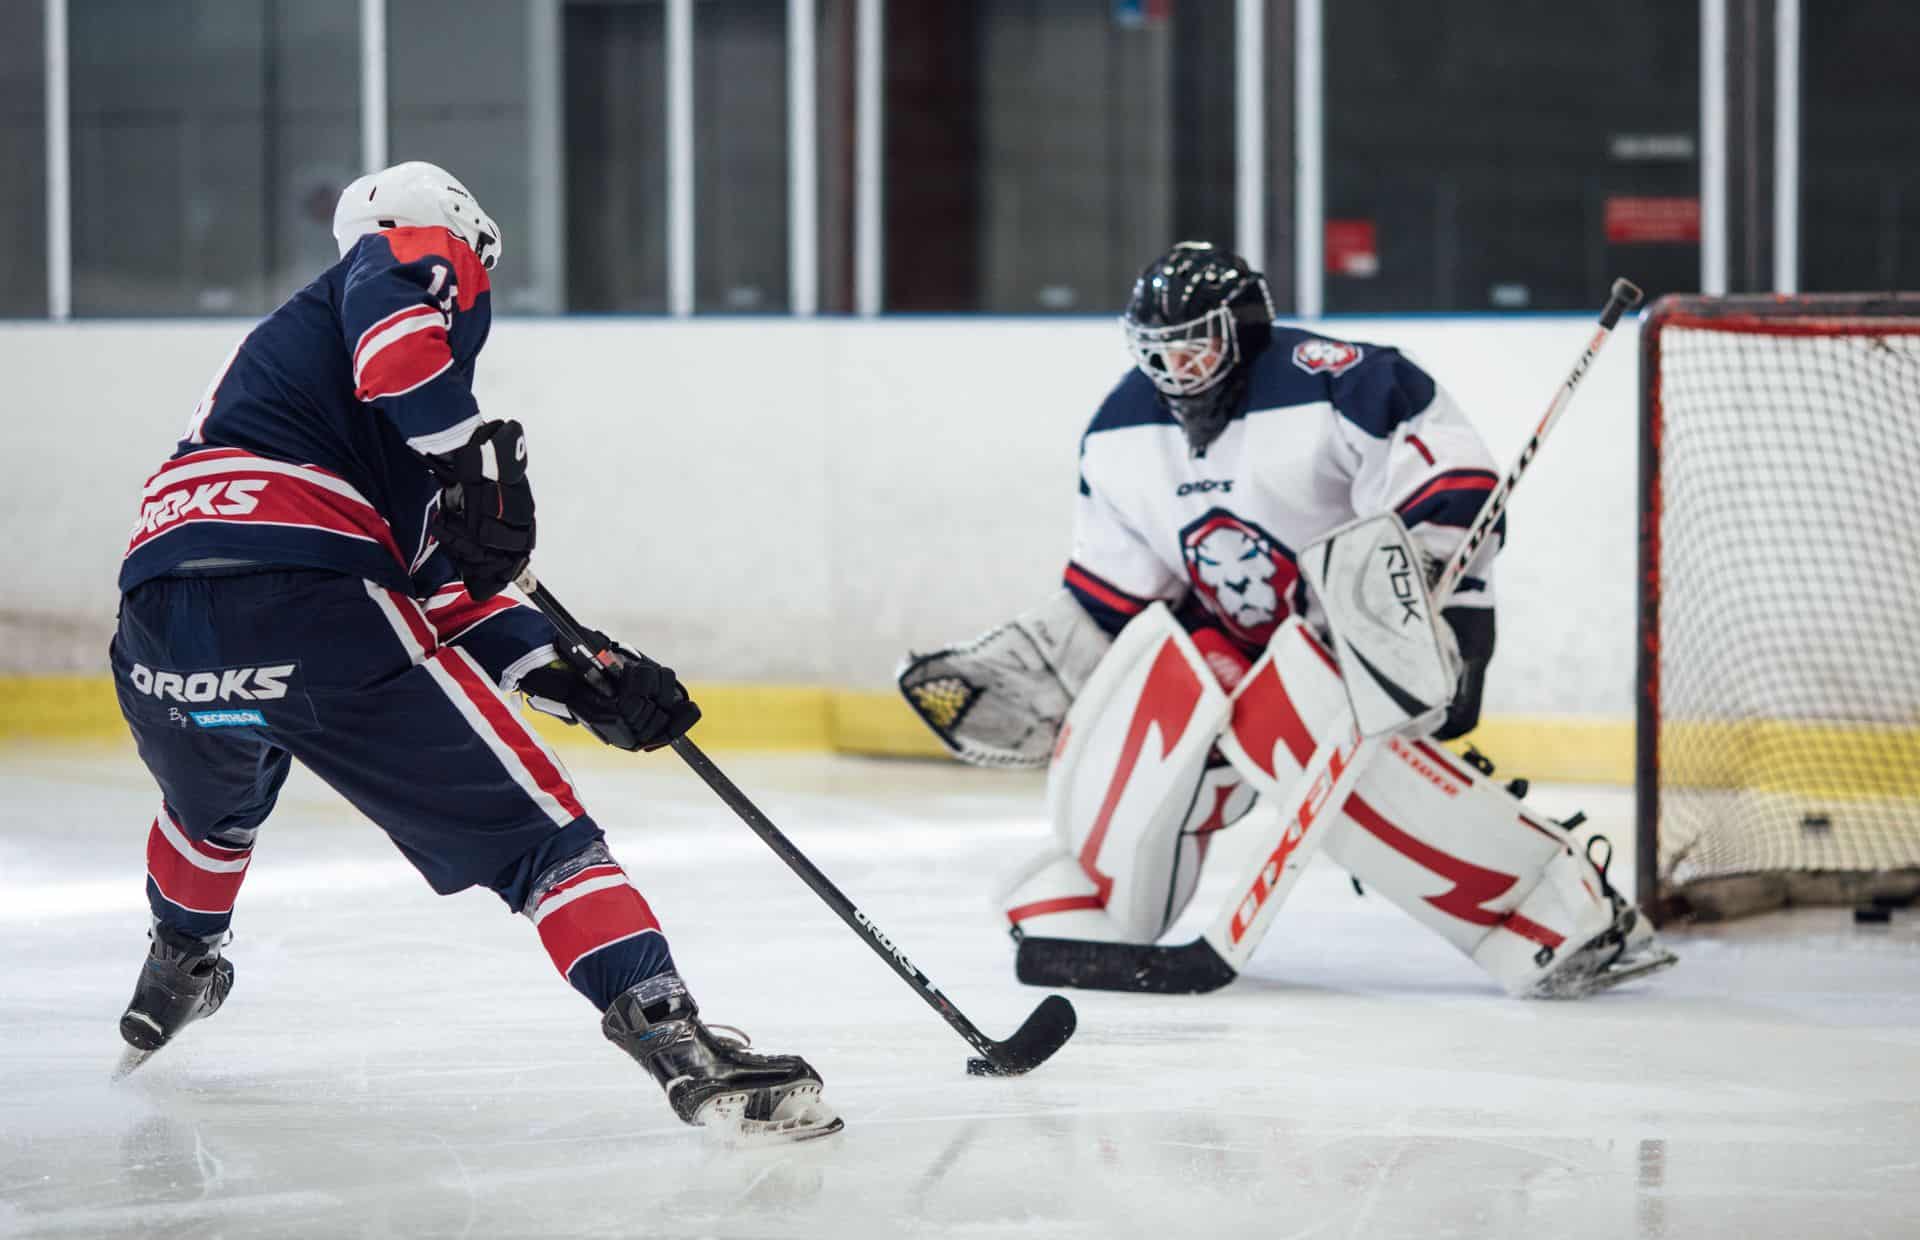 Boisko do hokeja - wymiary i oznaczenia lodowiska hokejowego